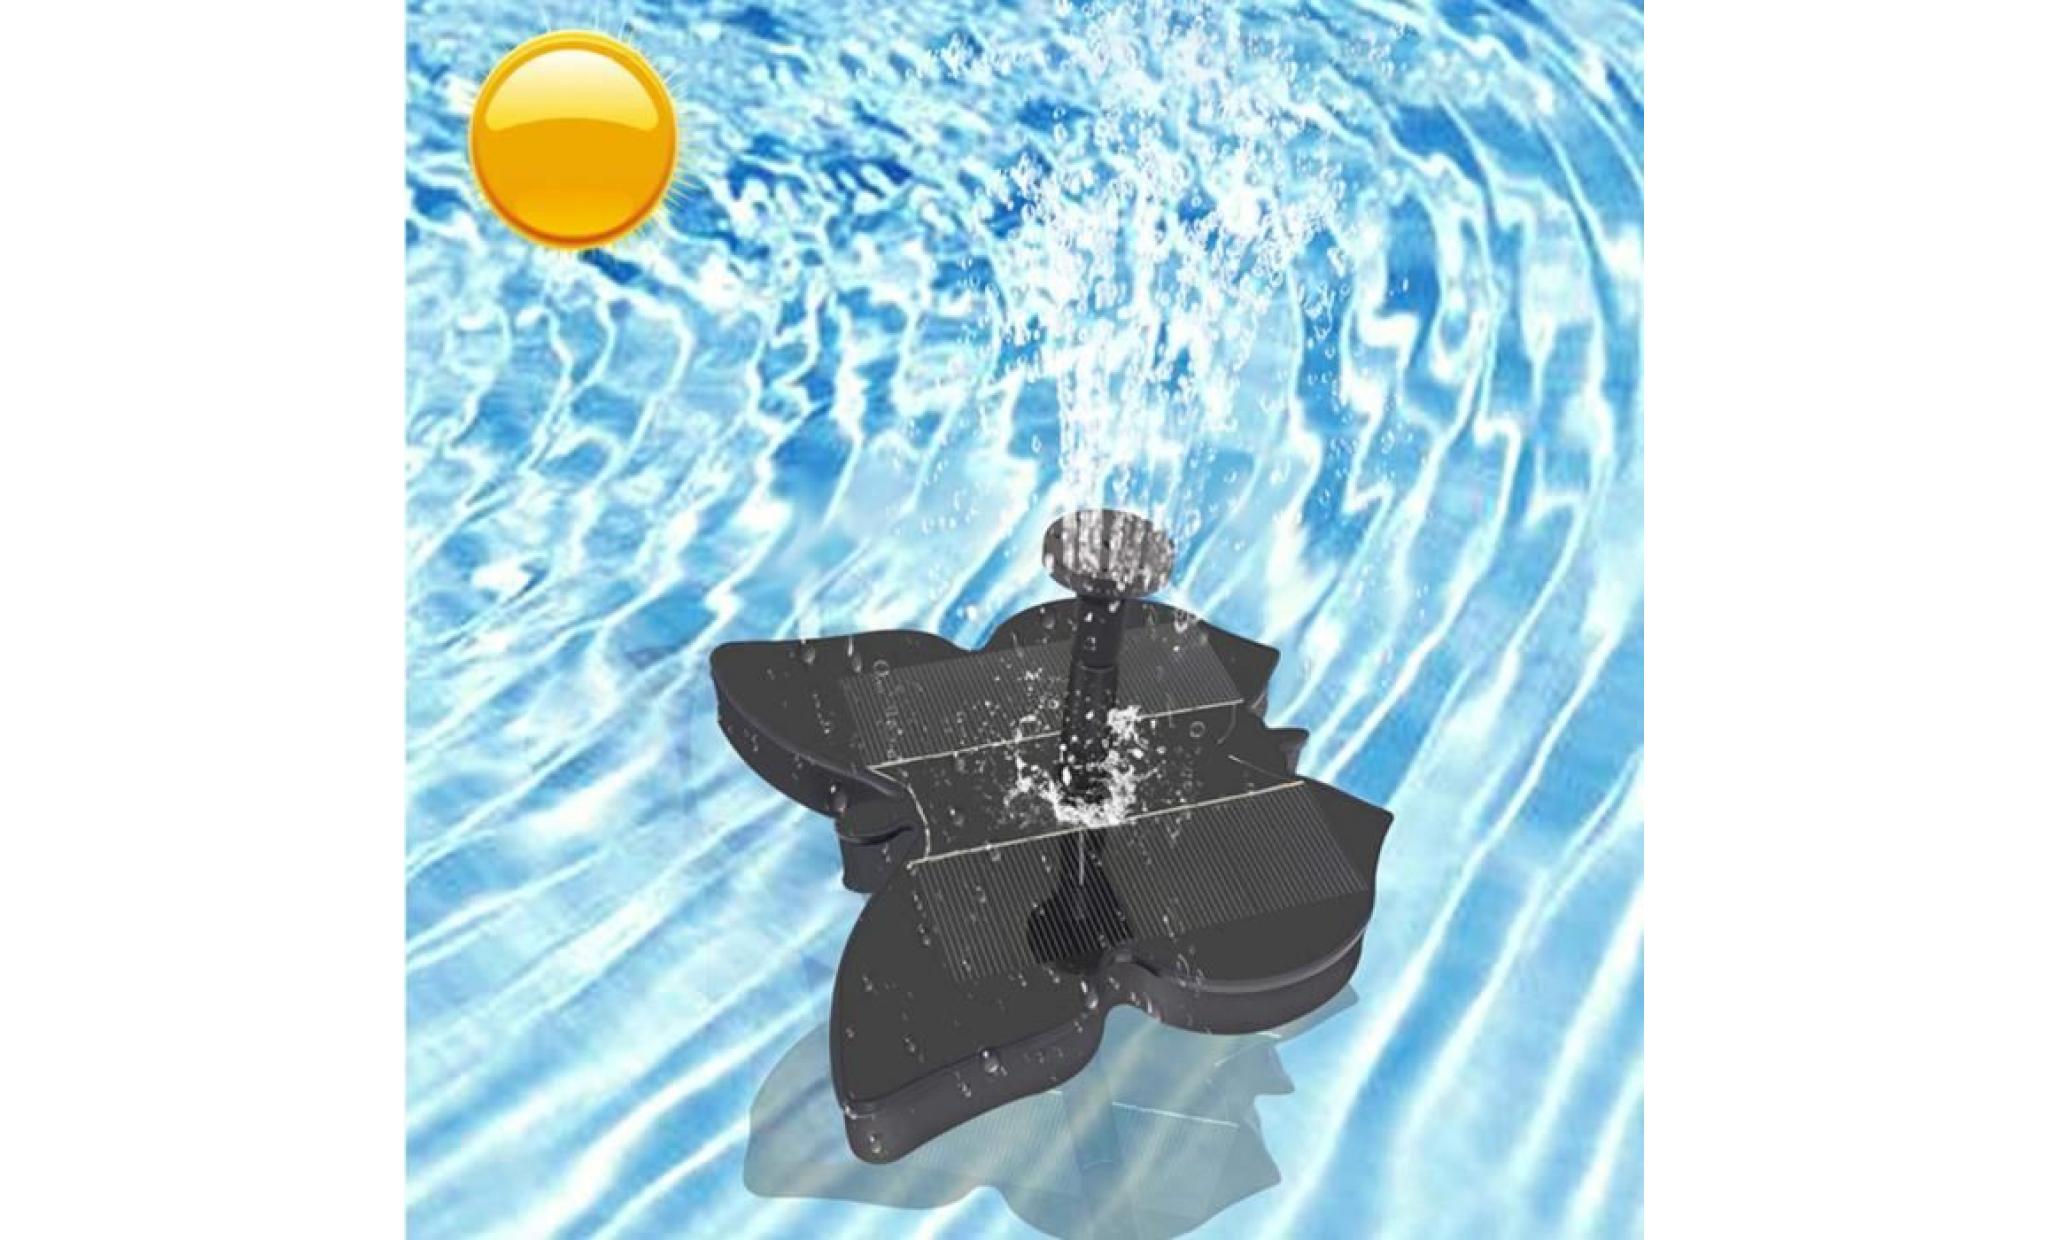 en forme de papillon sprinkler jardin piscine paysage décor solaire pompe à eau fontaine gh299 pas cher